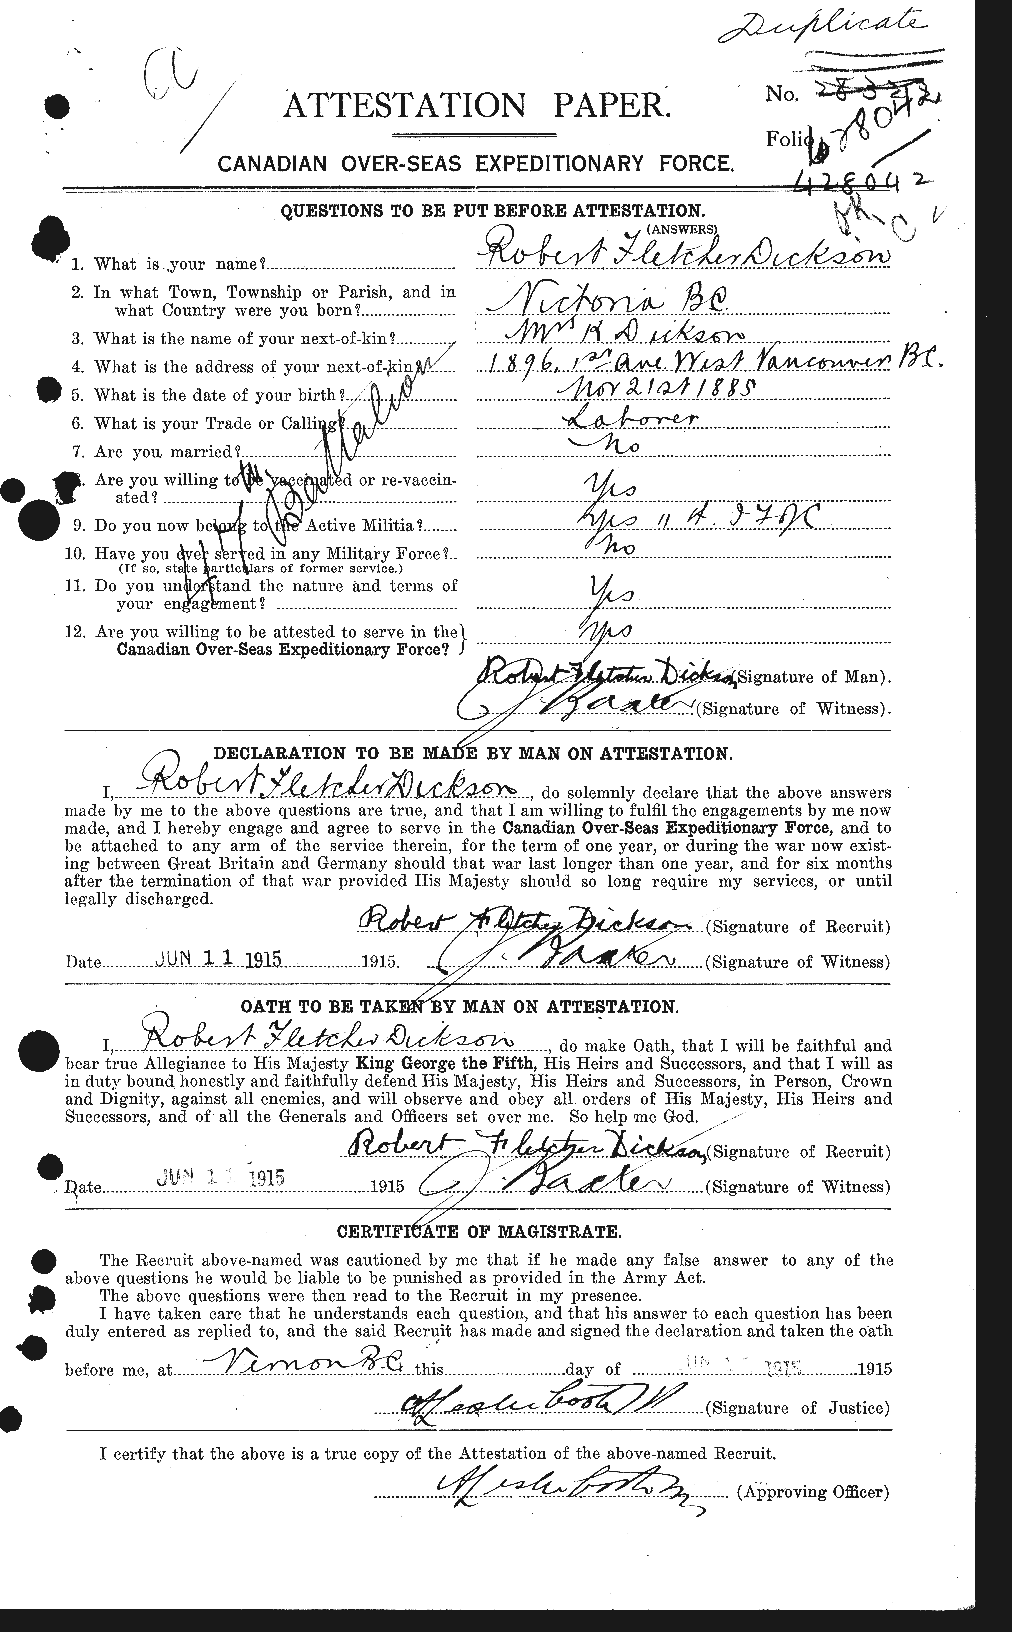 Dossiers du Personnel de la Première Guerre mondiale - CEC 291651a